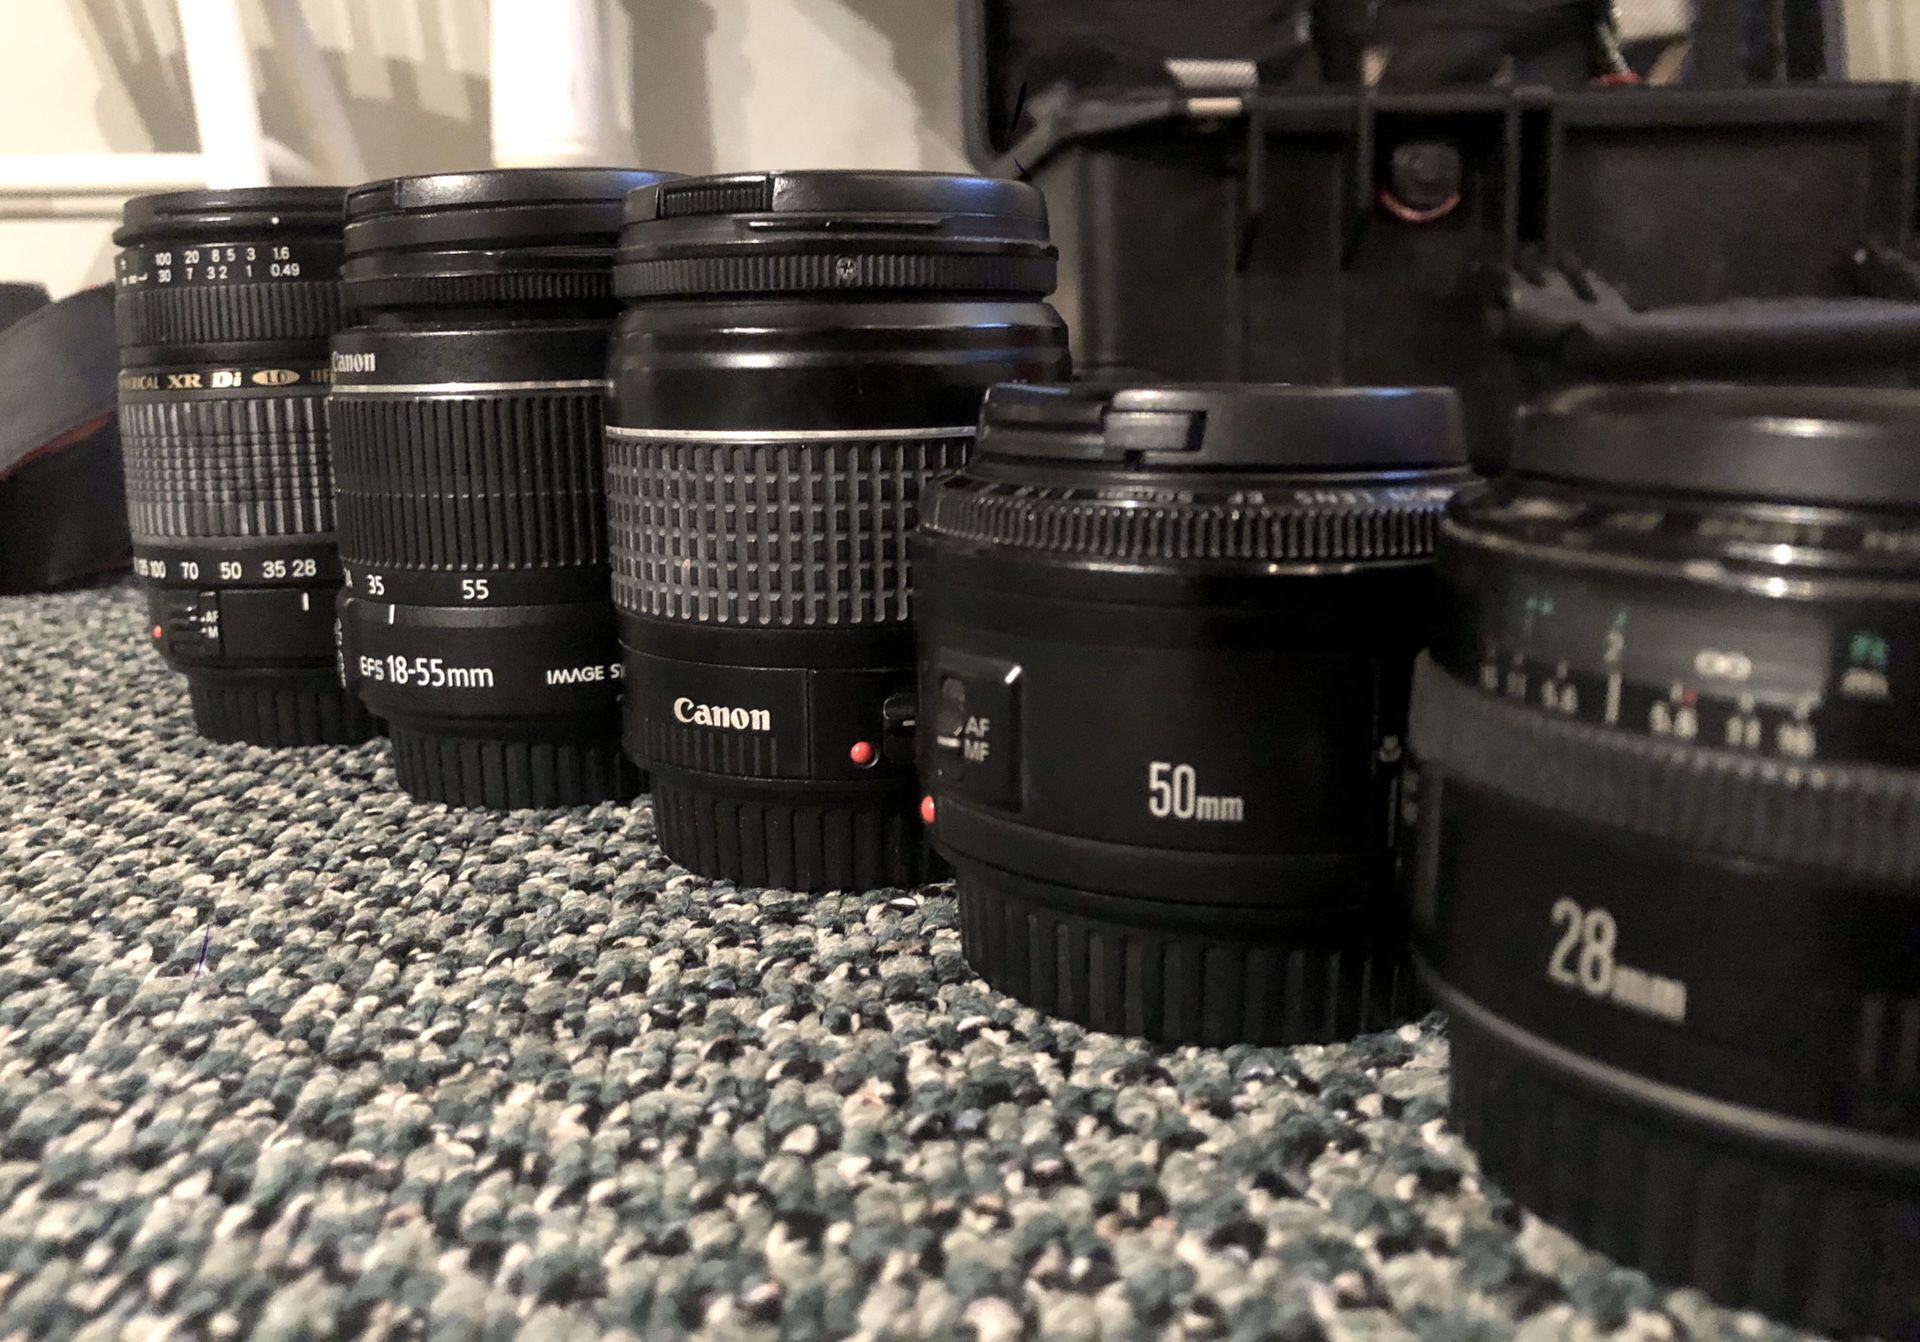 Canon lens collection - 5 lenses